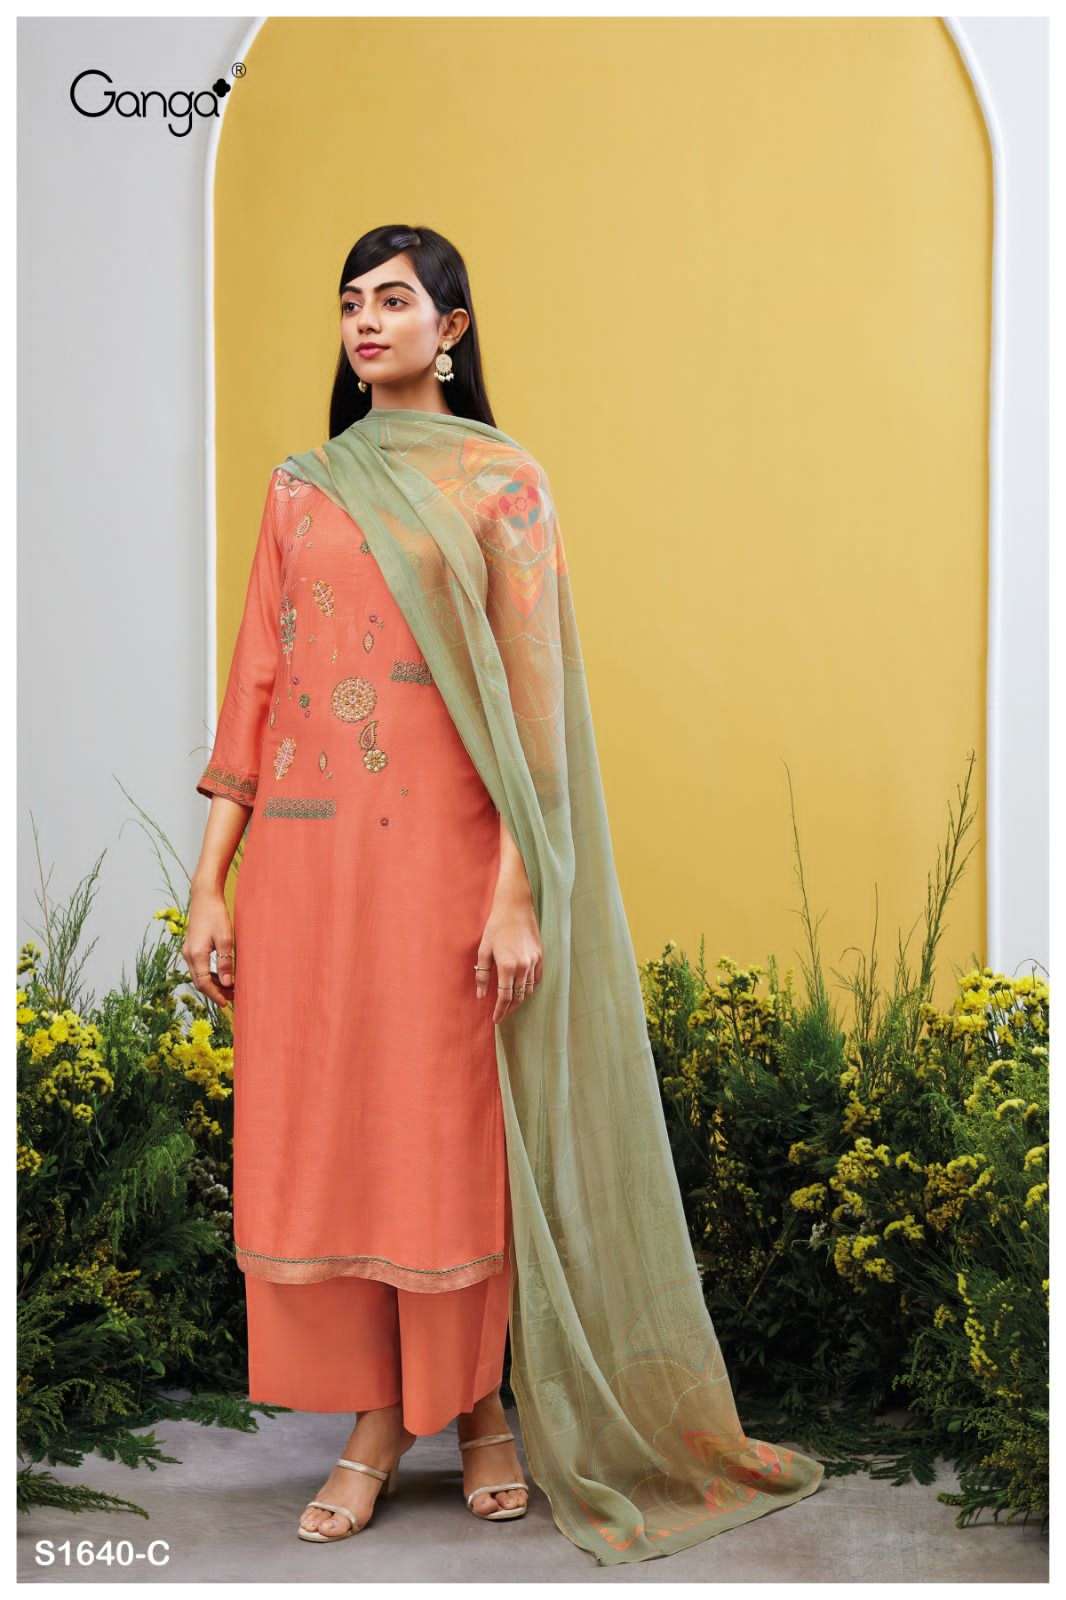 ganga adina 1640 series stylish designer salwar kameez catalogue manufacturer surat 